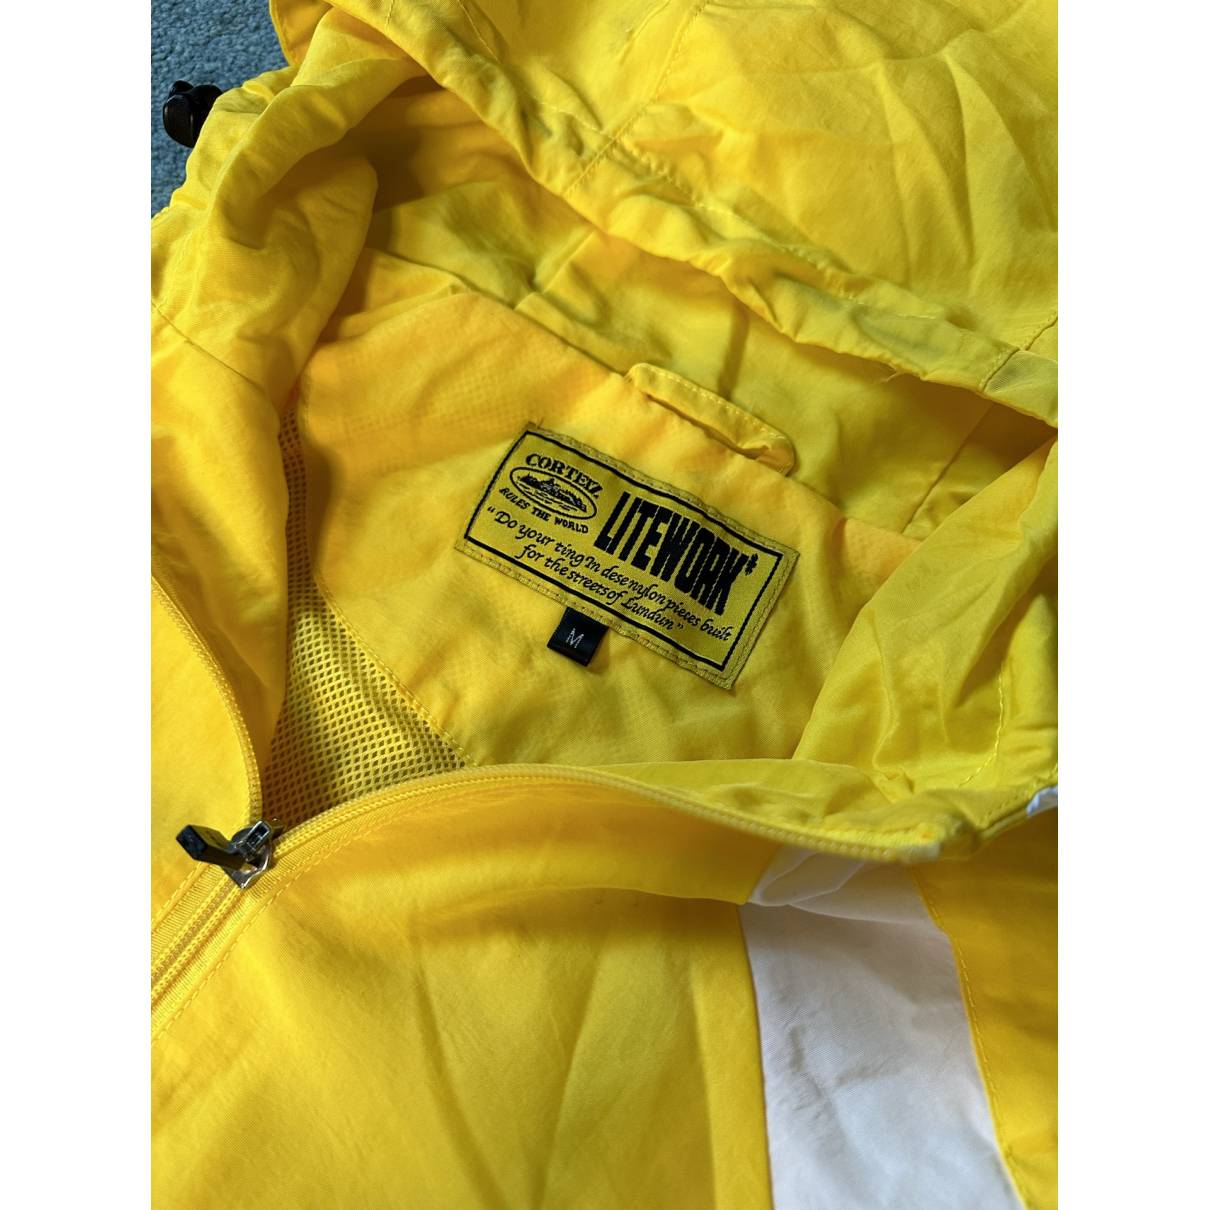 Jacket Corteiz Yellow size M International in Cotton